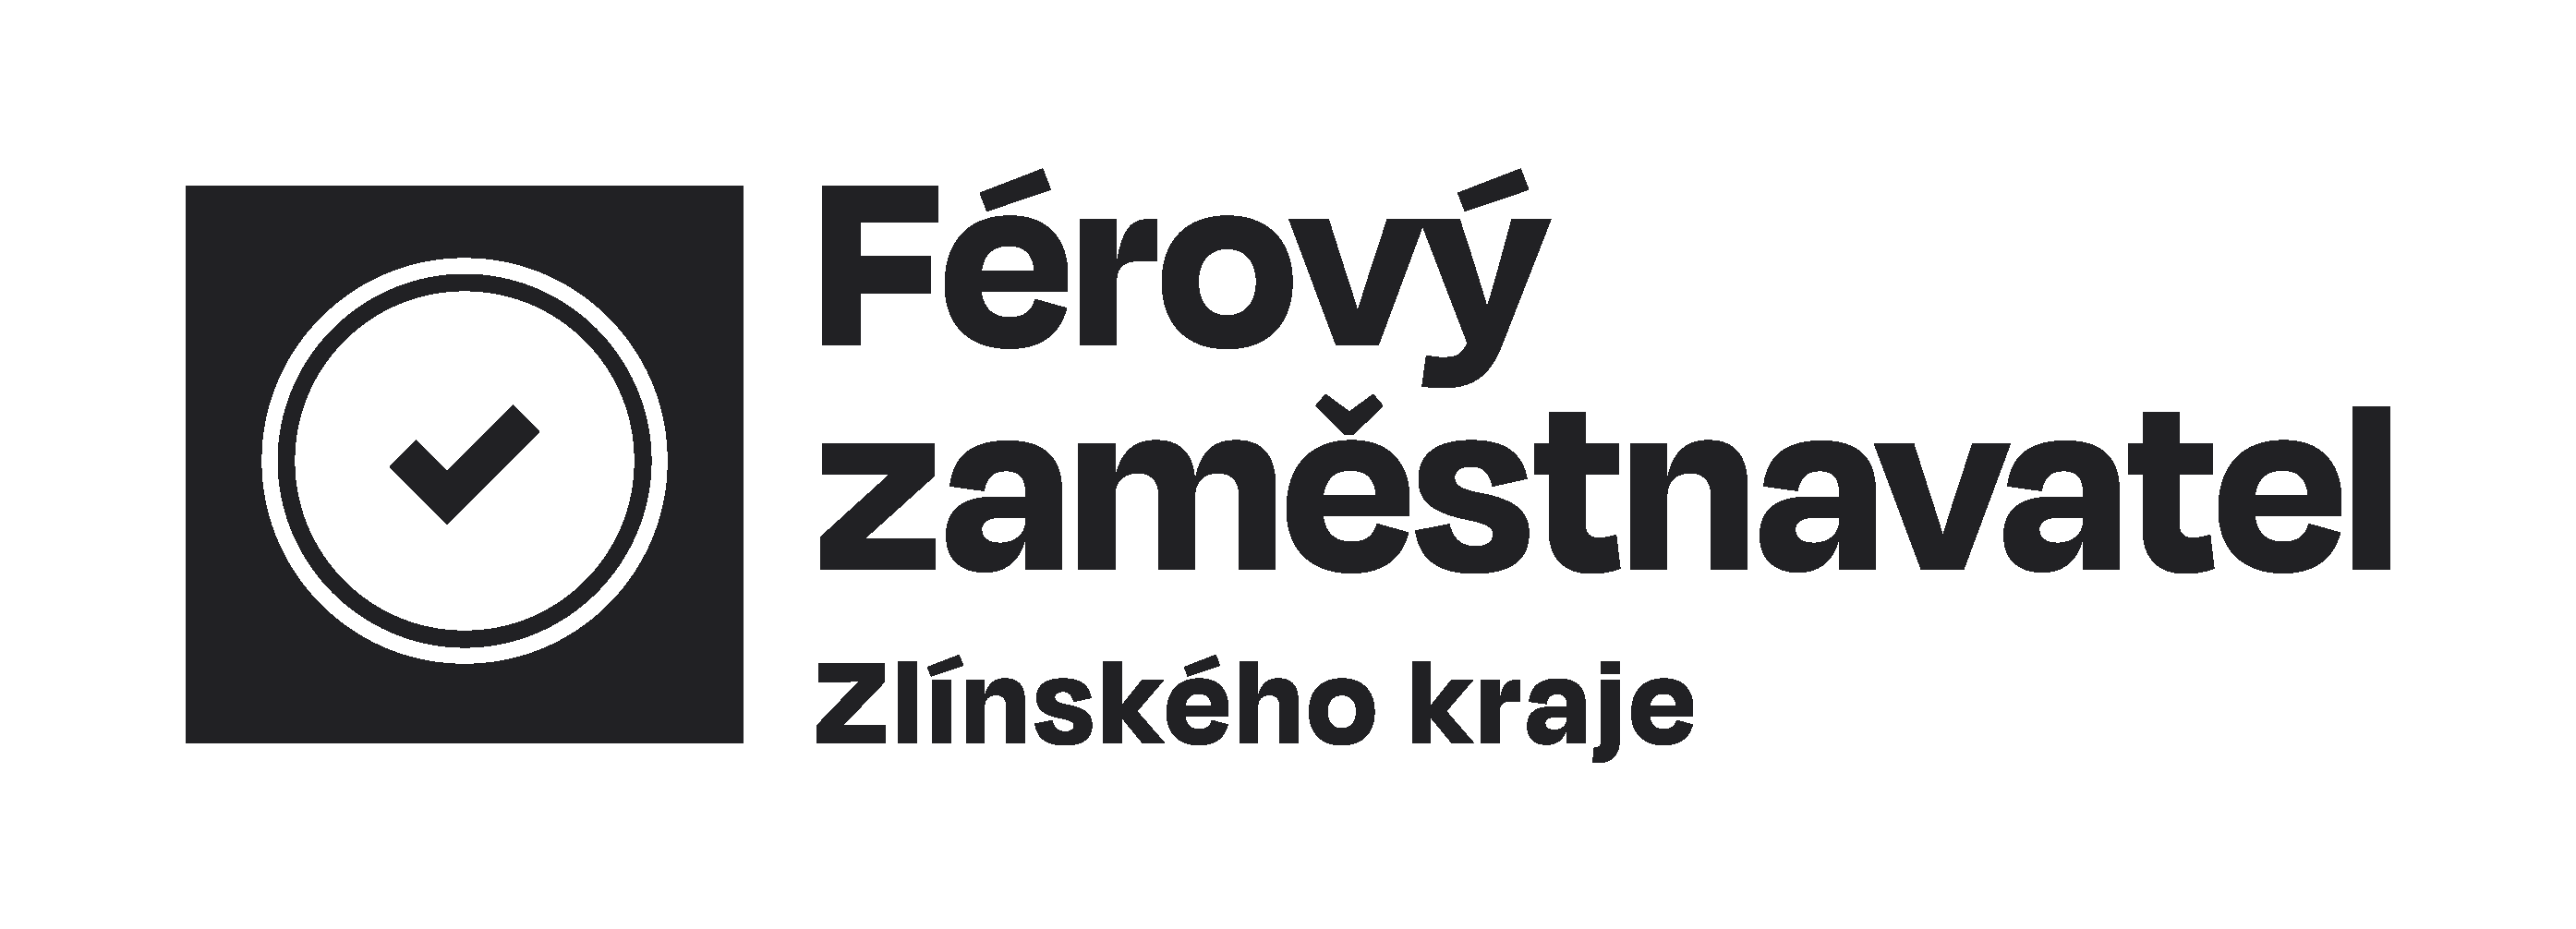 Logo férový zaměstnavatel zlínského kraje